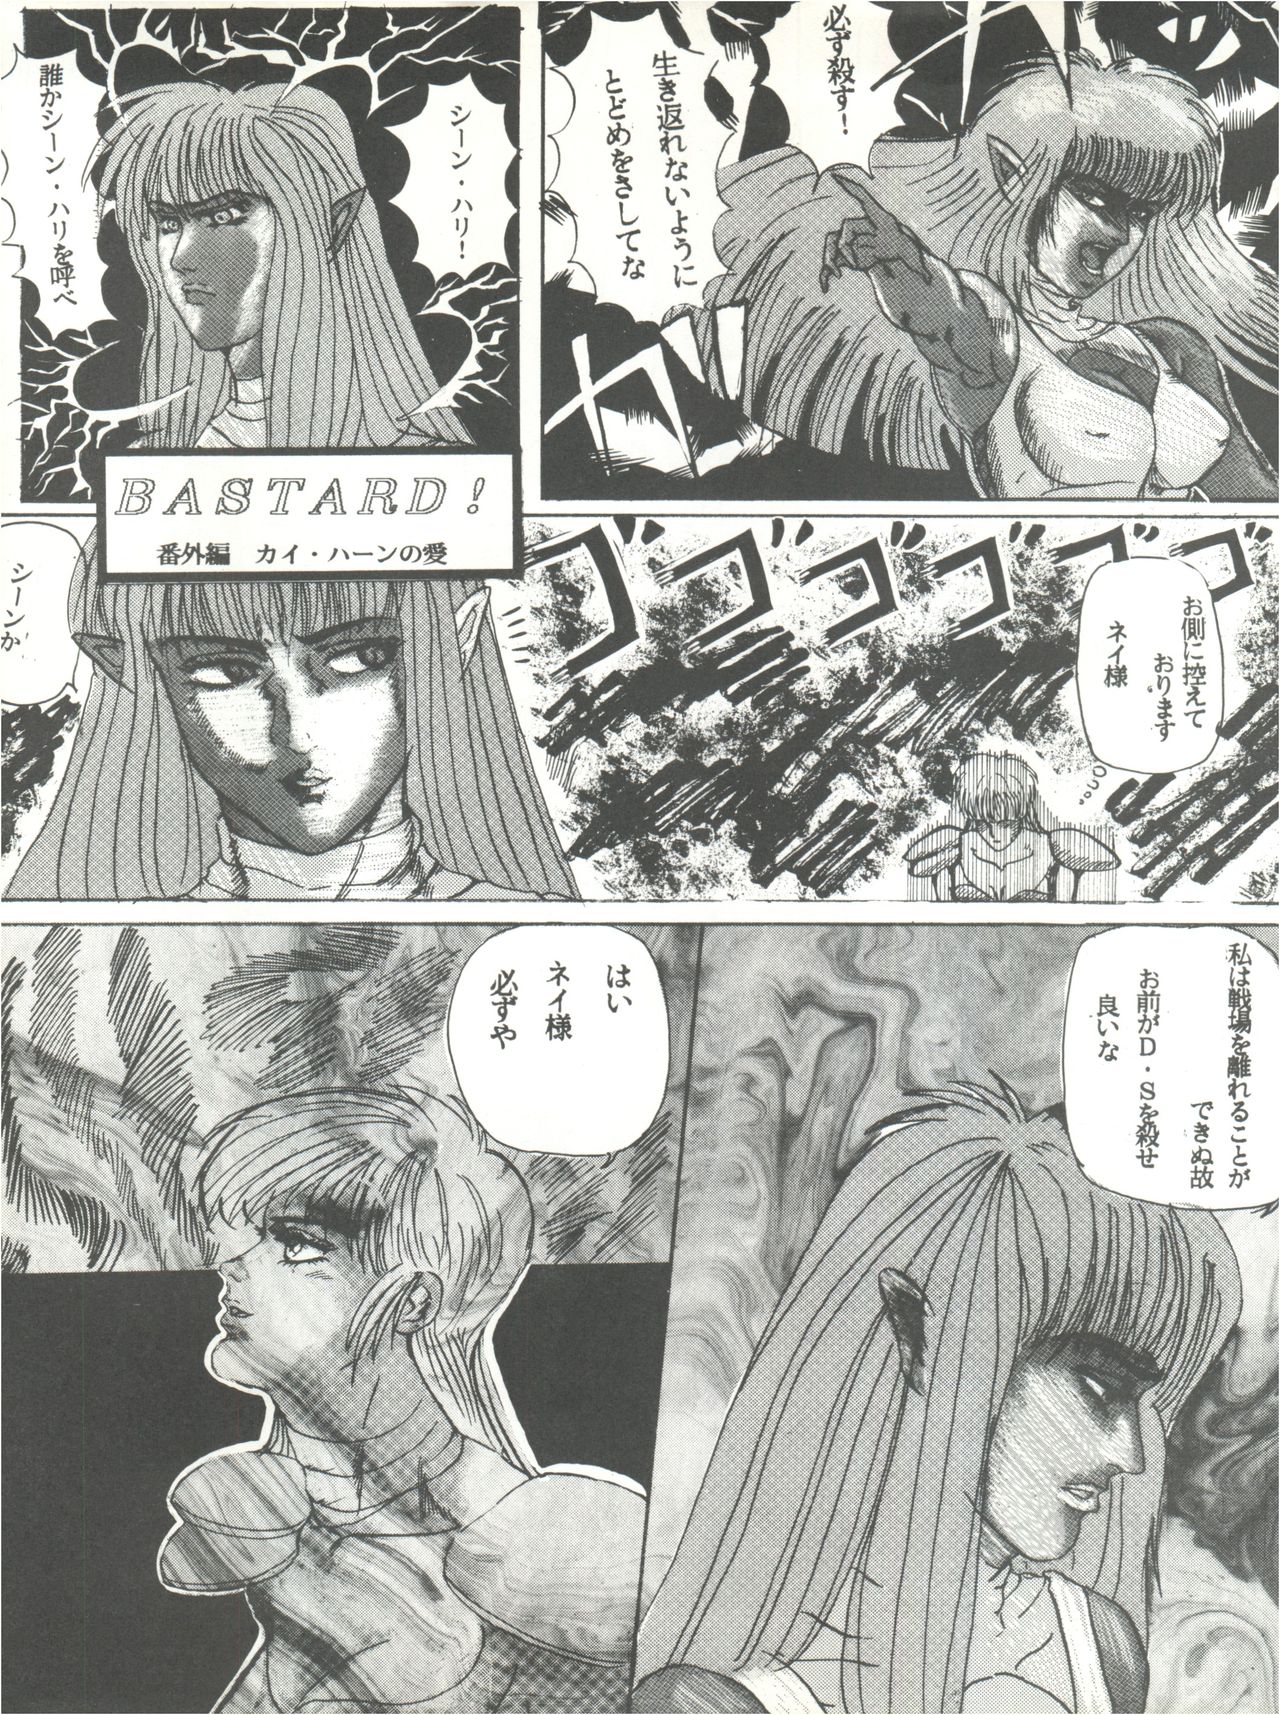 [L-Gauge Sha (Shouryuu)] WA 2 (Ranma 1/2, Bastard) [1993-10-03] [Lゲージ社 (昇龍)] WA 2 (らんま 1/2、BASTARD!! -暗黒の破壊神-)